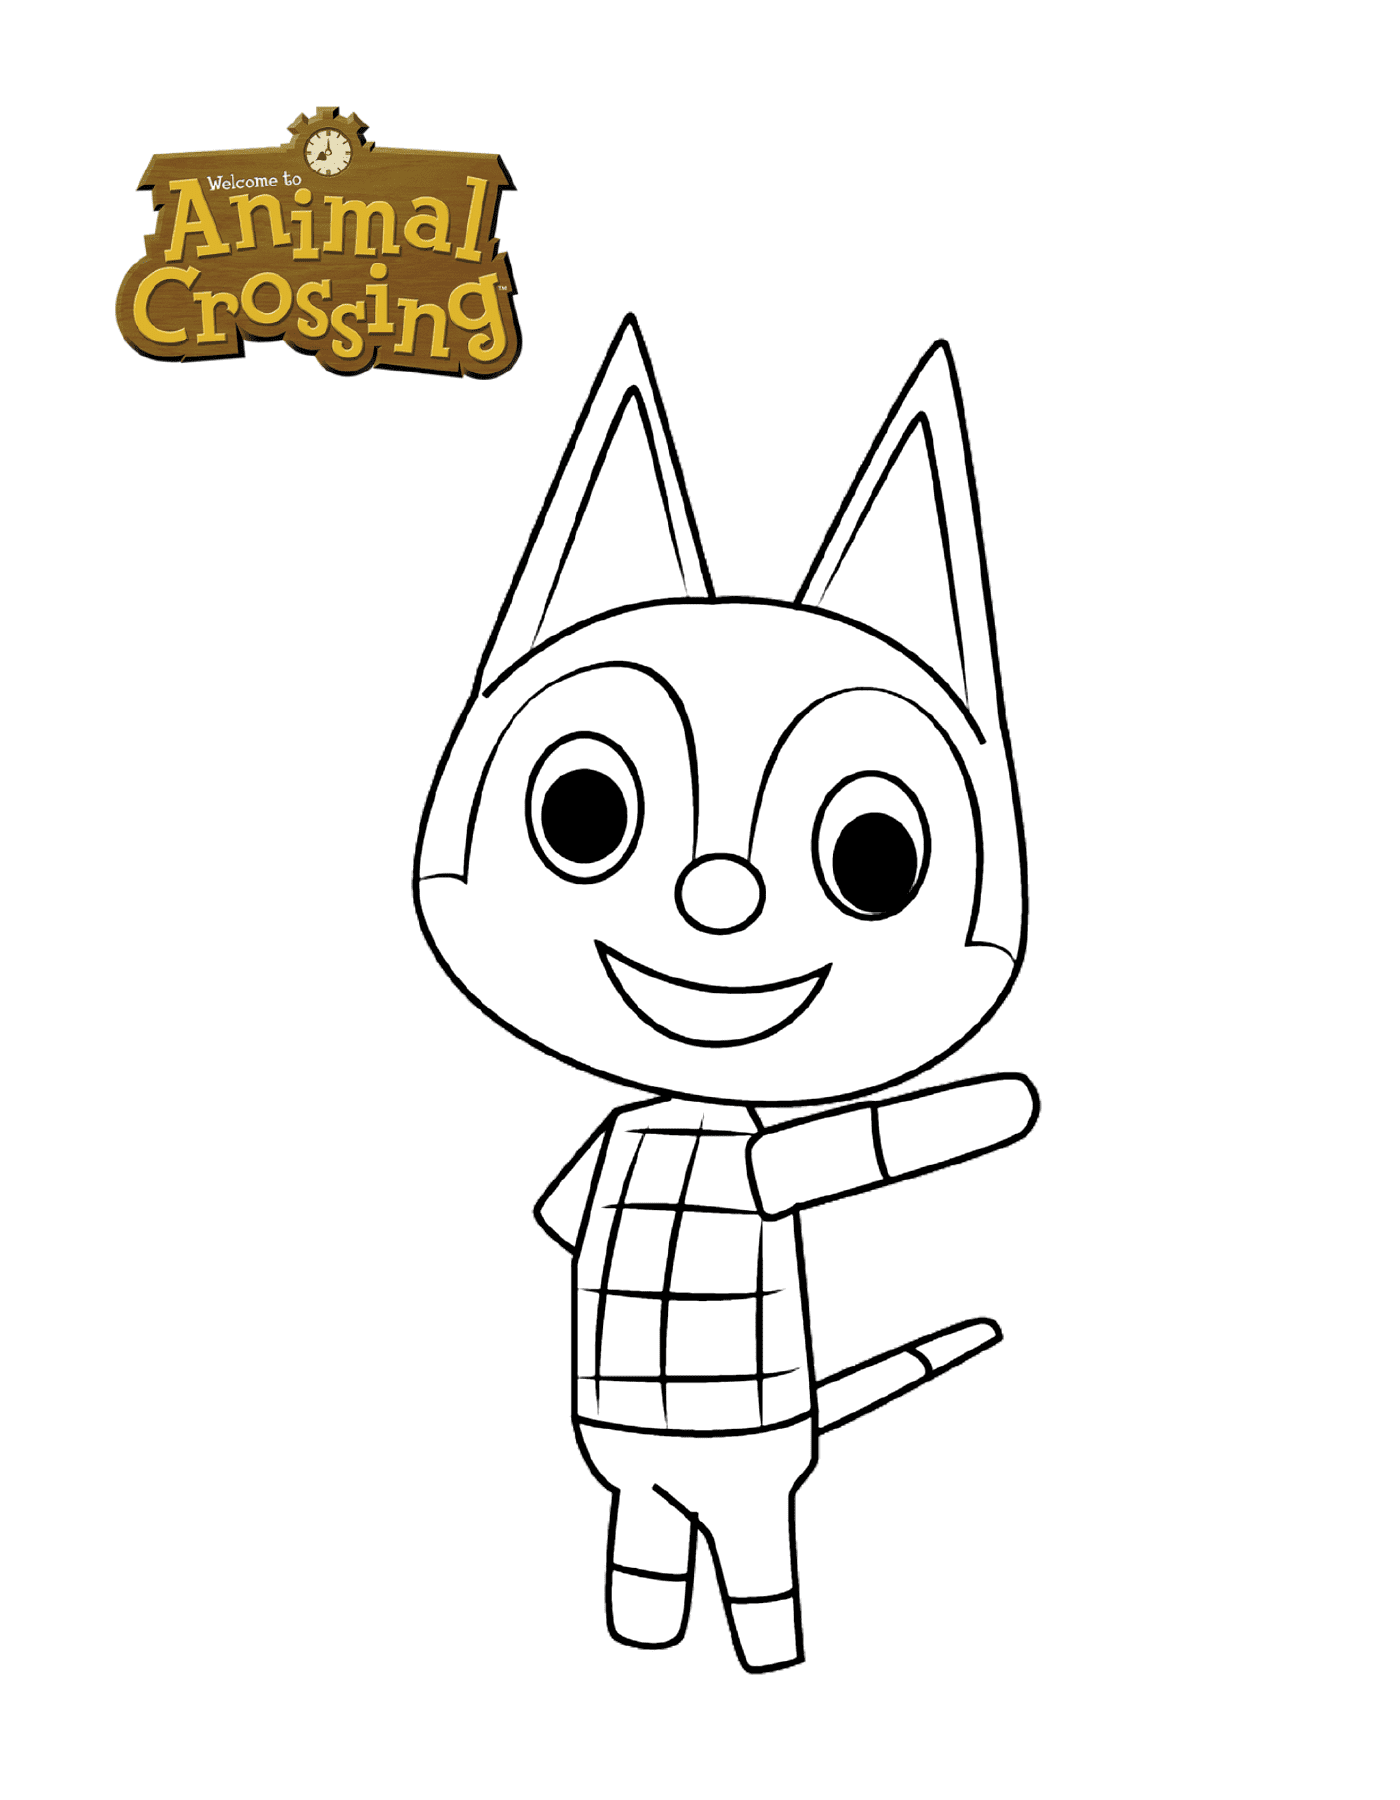  El gato de Rudy's Animal Crossing 